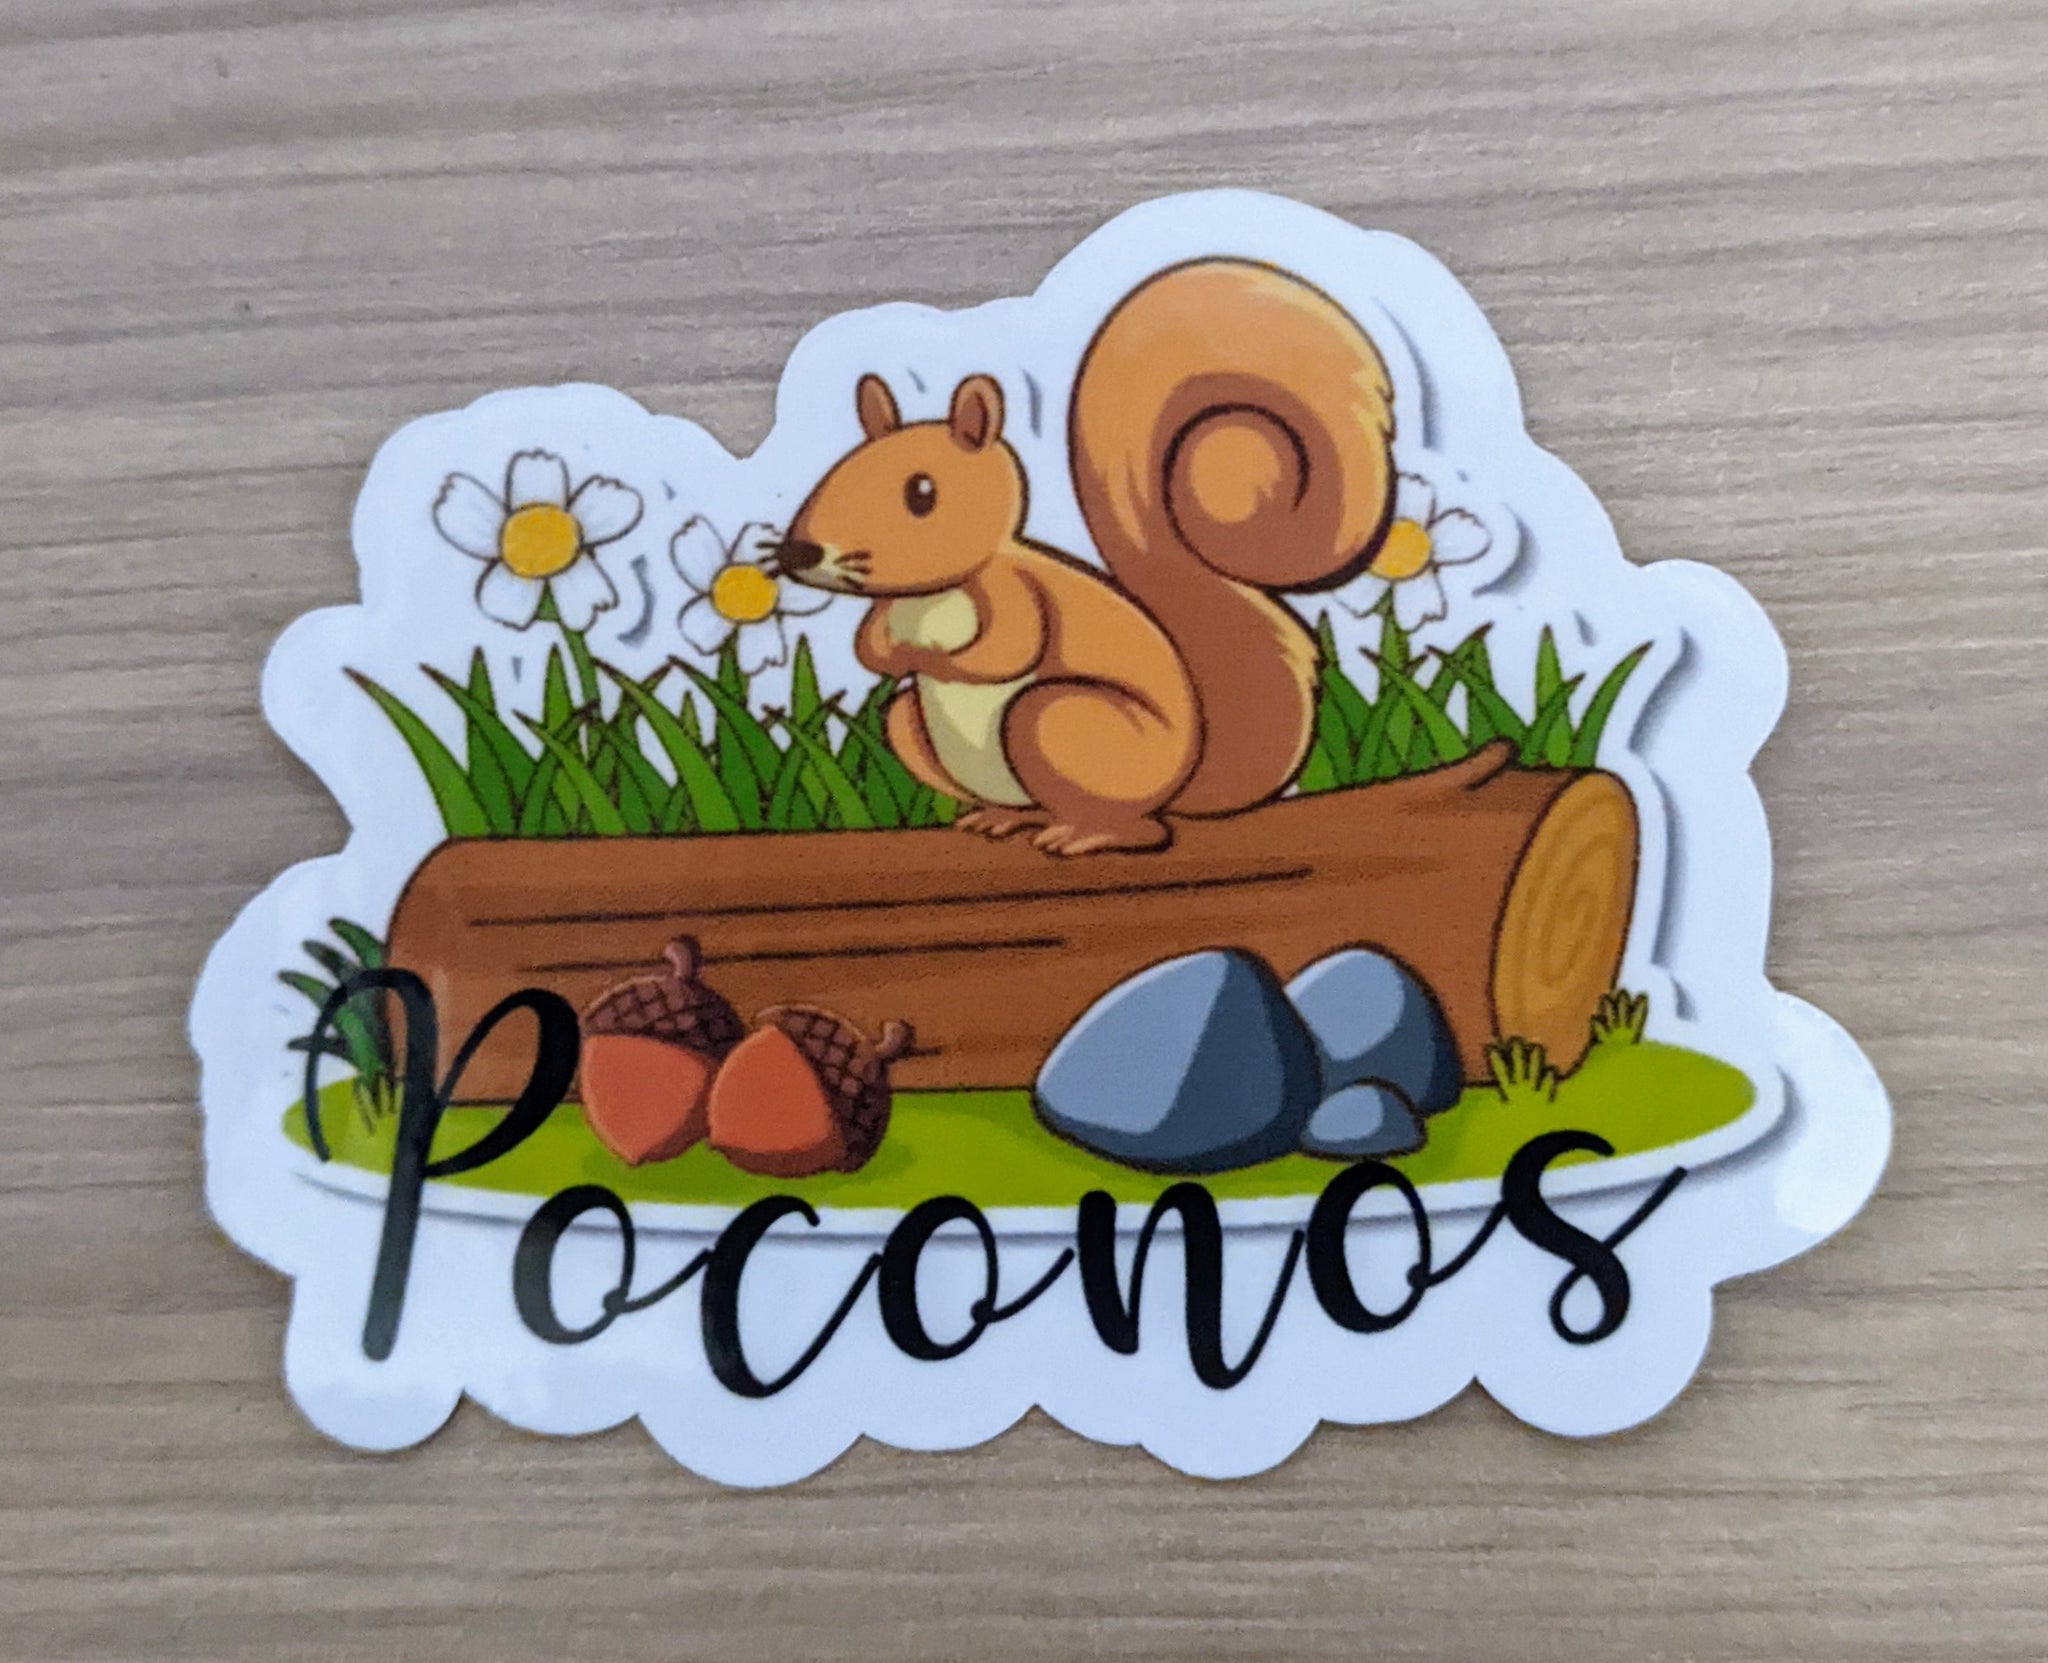 Poconos, Pocono Mountains, sticker, souvenir, squirrel 